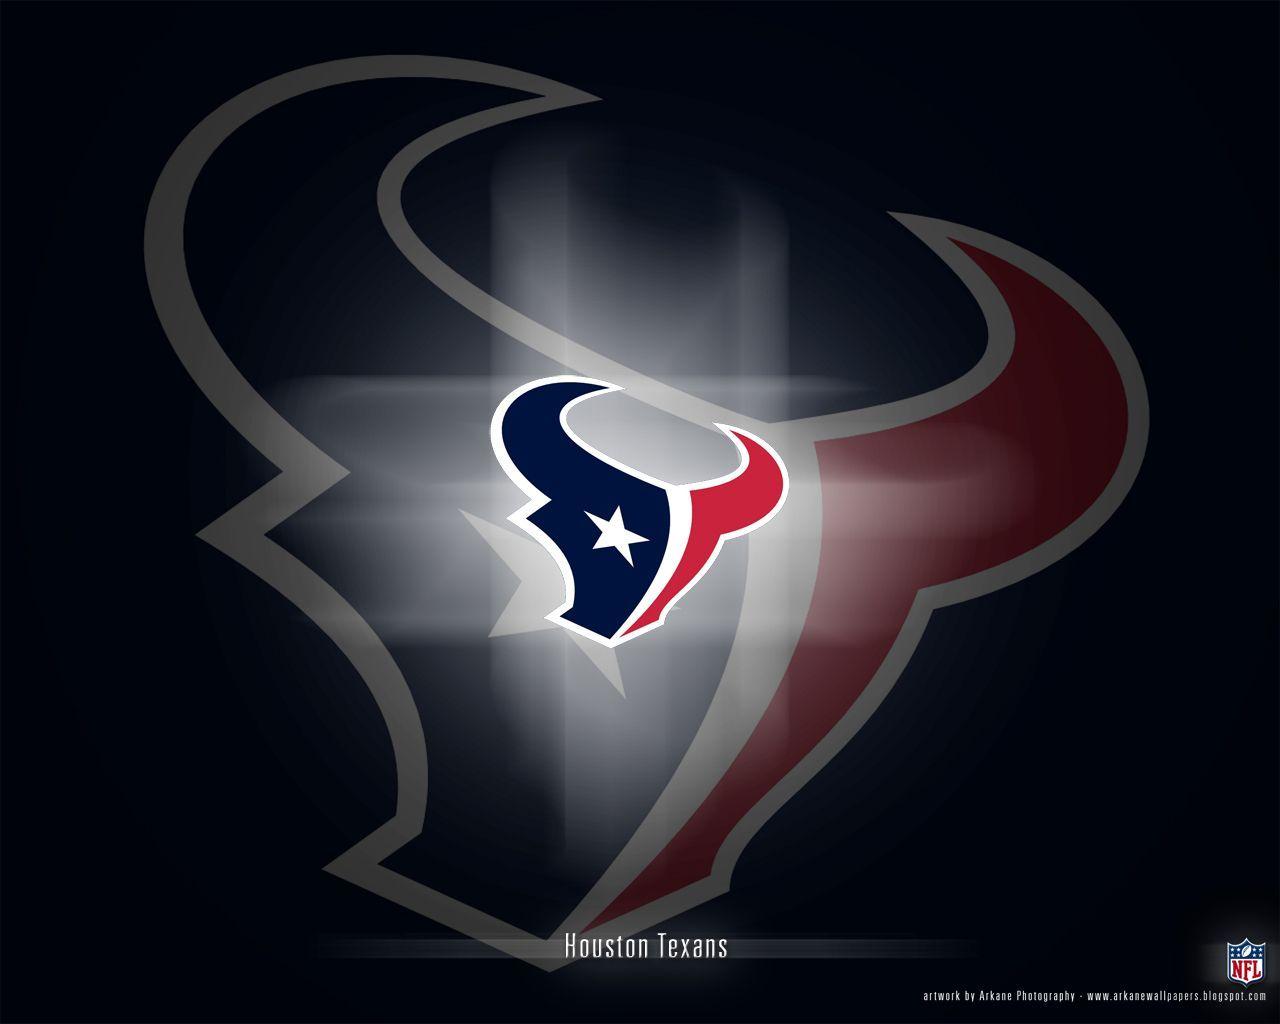 Texasn Logo - texans logos free | houston texans logo wallpaper free free ...